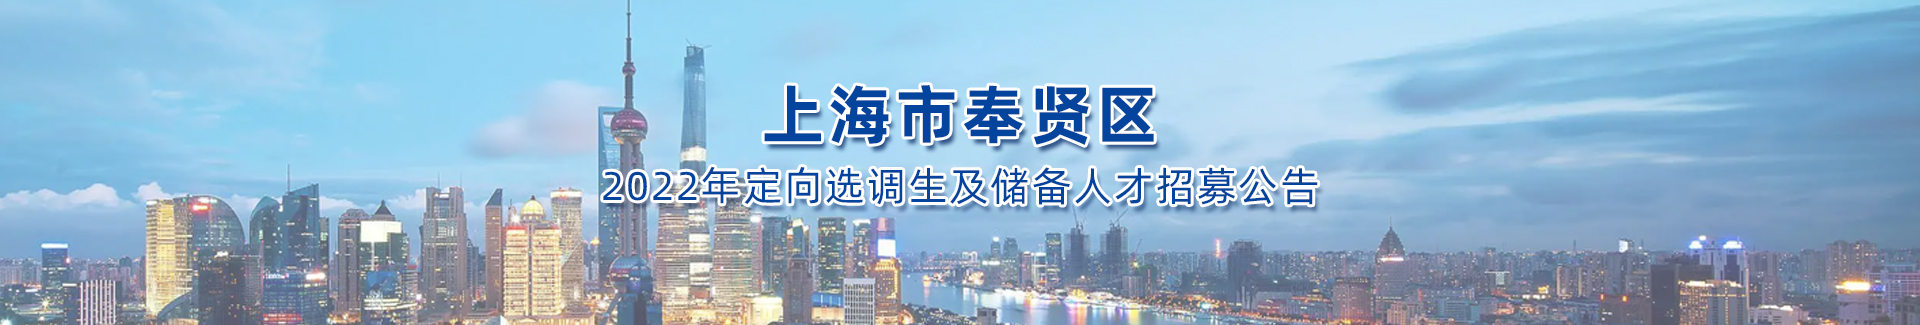 2022年上海市奉賢區定向選調生及儲備人才招募公告